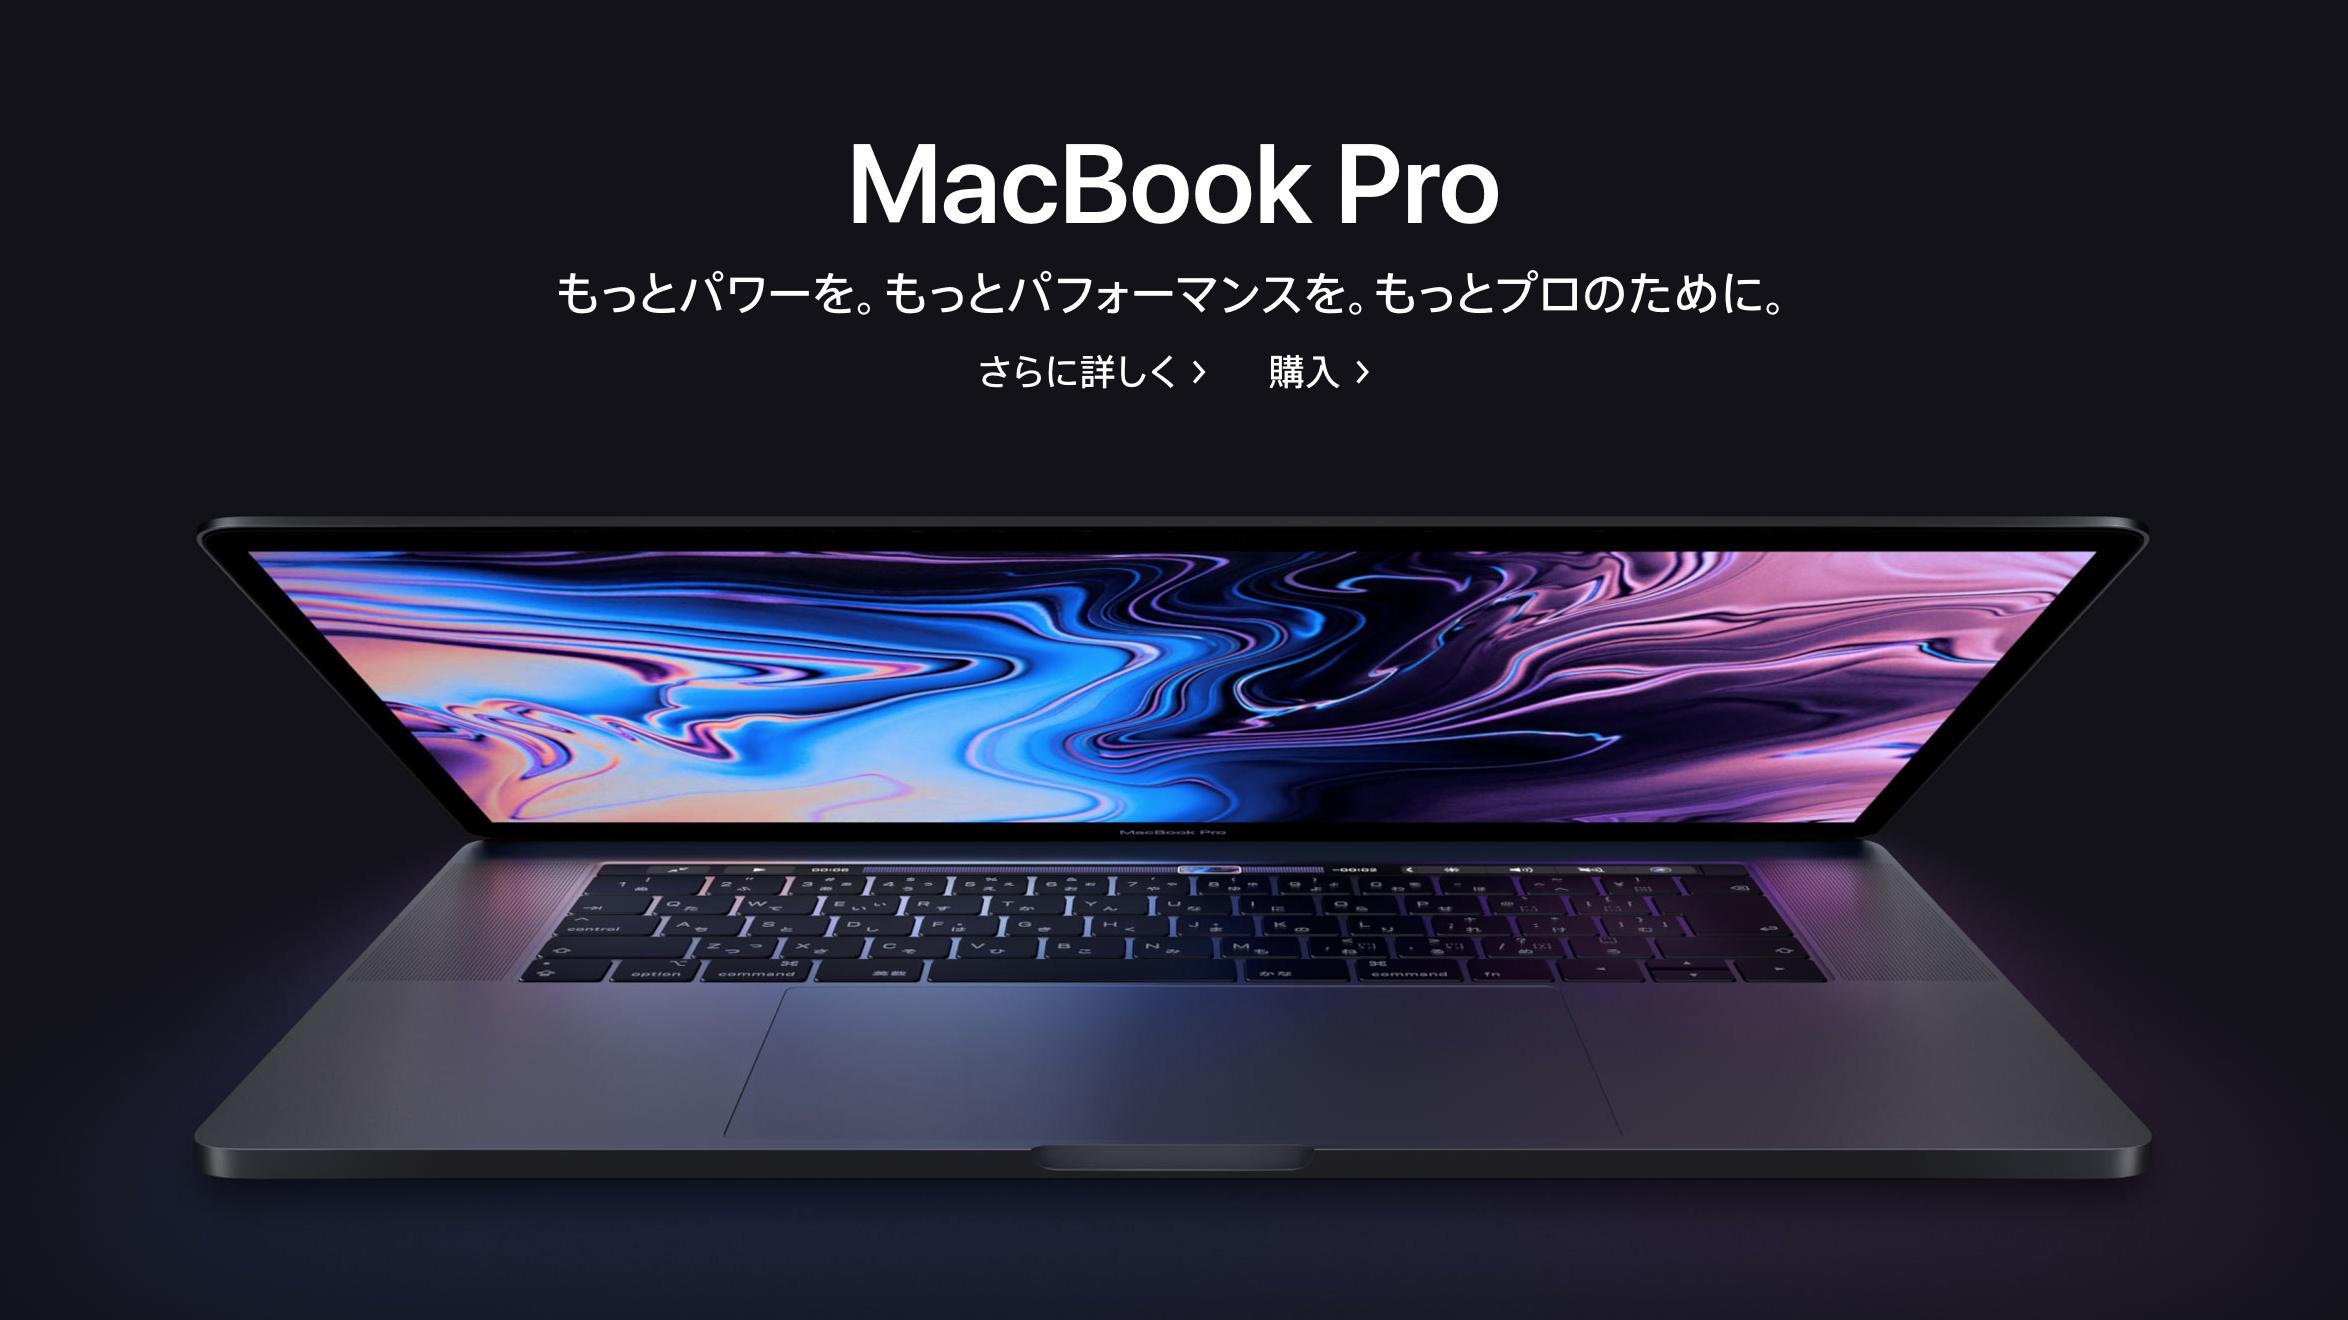 【ケース付き】MacBook Pro(15inch, 2016)Radeon搭載